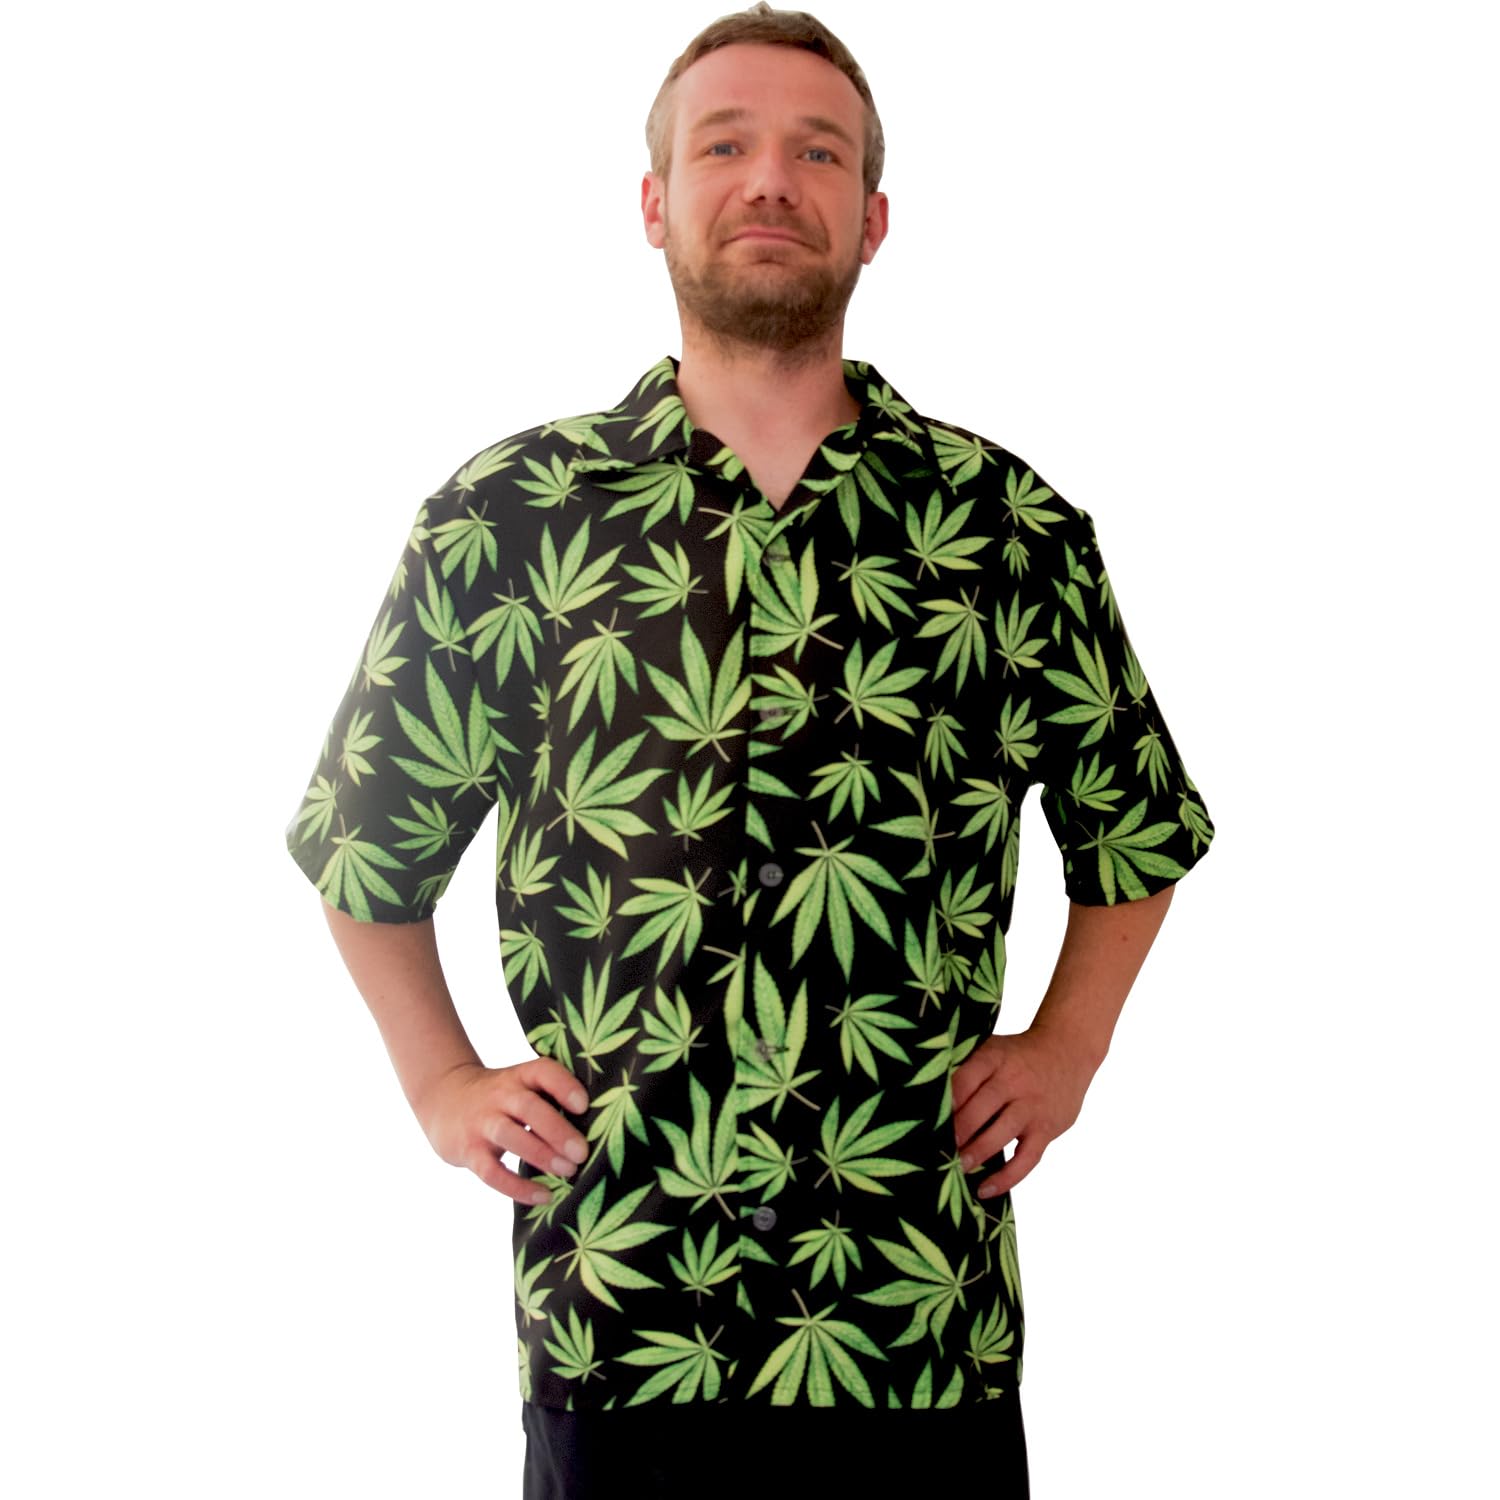 Krause & Sohn Hawaii Hemd schwarz mit Hanfblätter-Motiv grün Mr. Cannabis für Herren Gr. 50-60 JGA Sommerhemd Freizeit Party-Outfit (as3, Numeric, Numeric_58, Numeric_60, Plus, extra_Tall)